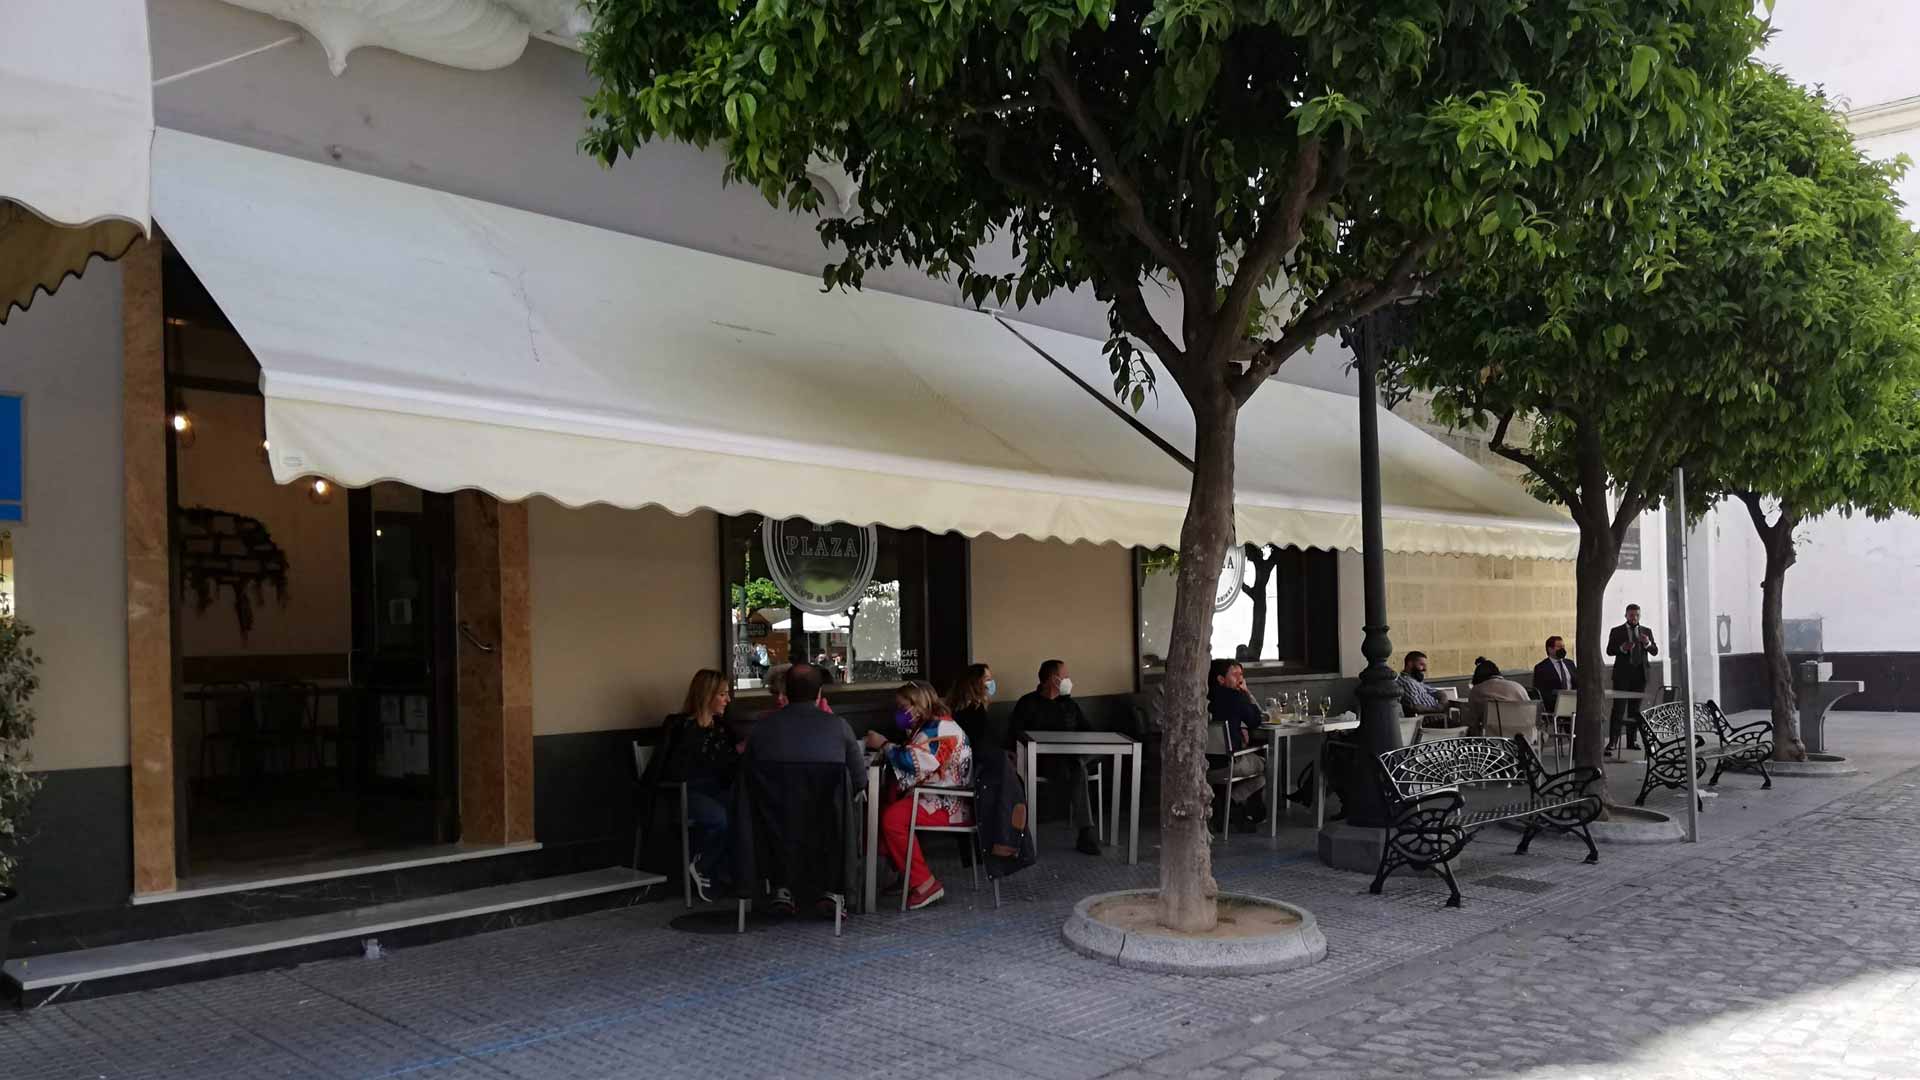 Abre la Tapería El Plaza en la plaza San Francisco de Cádiz